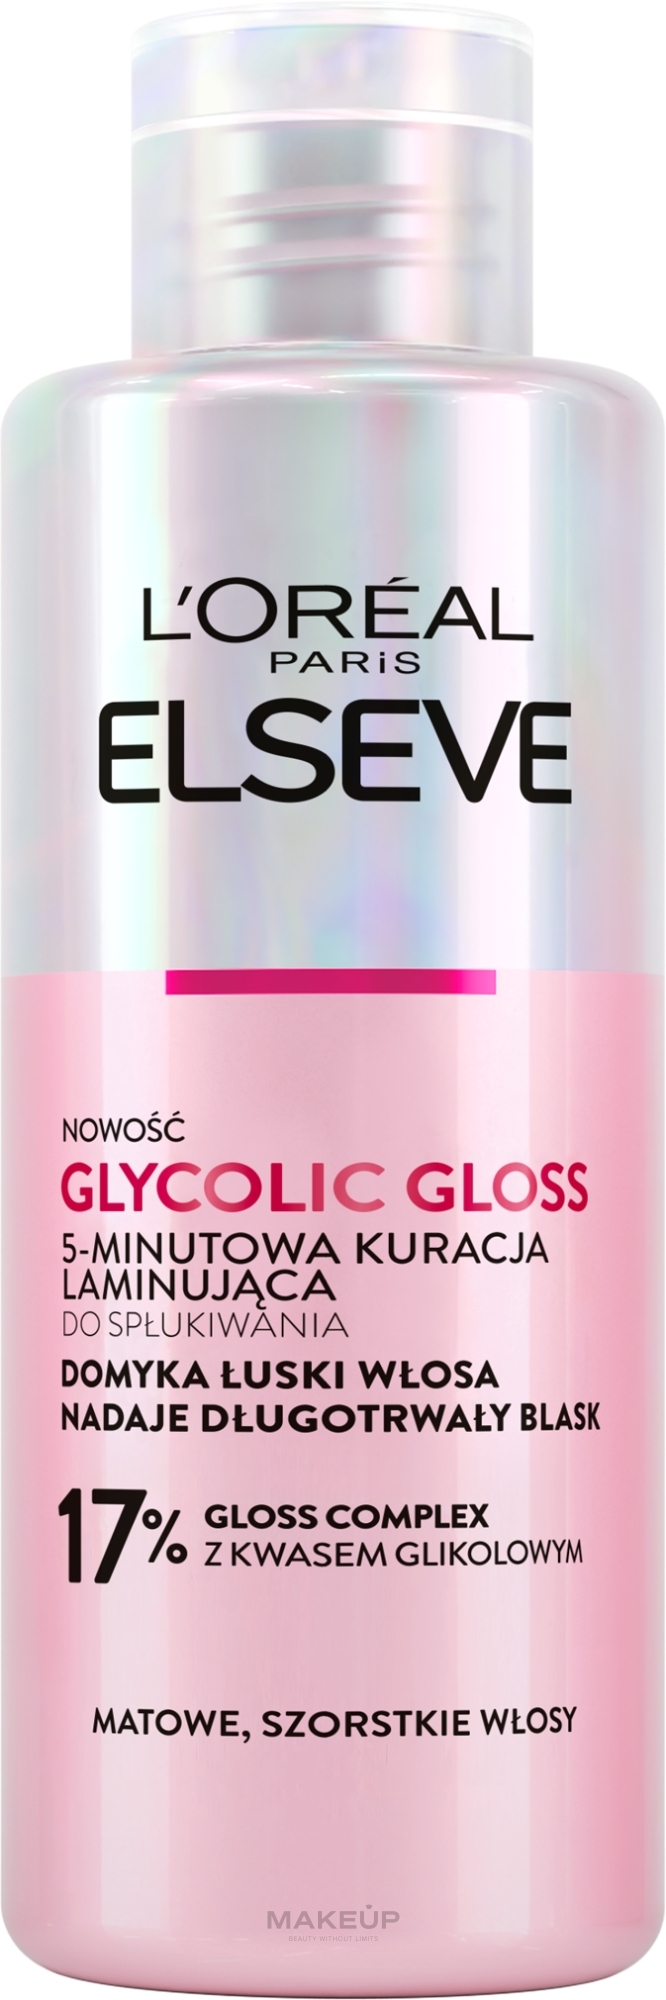 5-minutowa kuracja laminująca do włosów - L’Oréal Paris Elseve Glycolic Gloss Lamination Treatment 5 Min with Glycolic Acid — Zdjęcie 200 ml